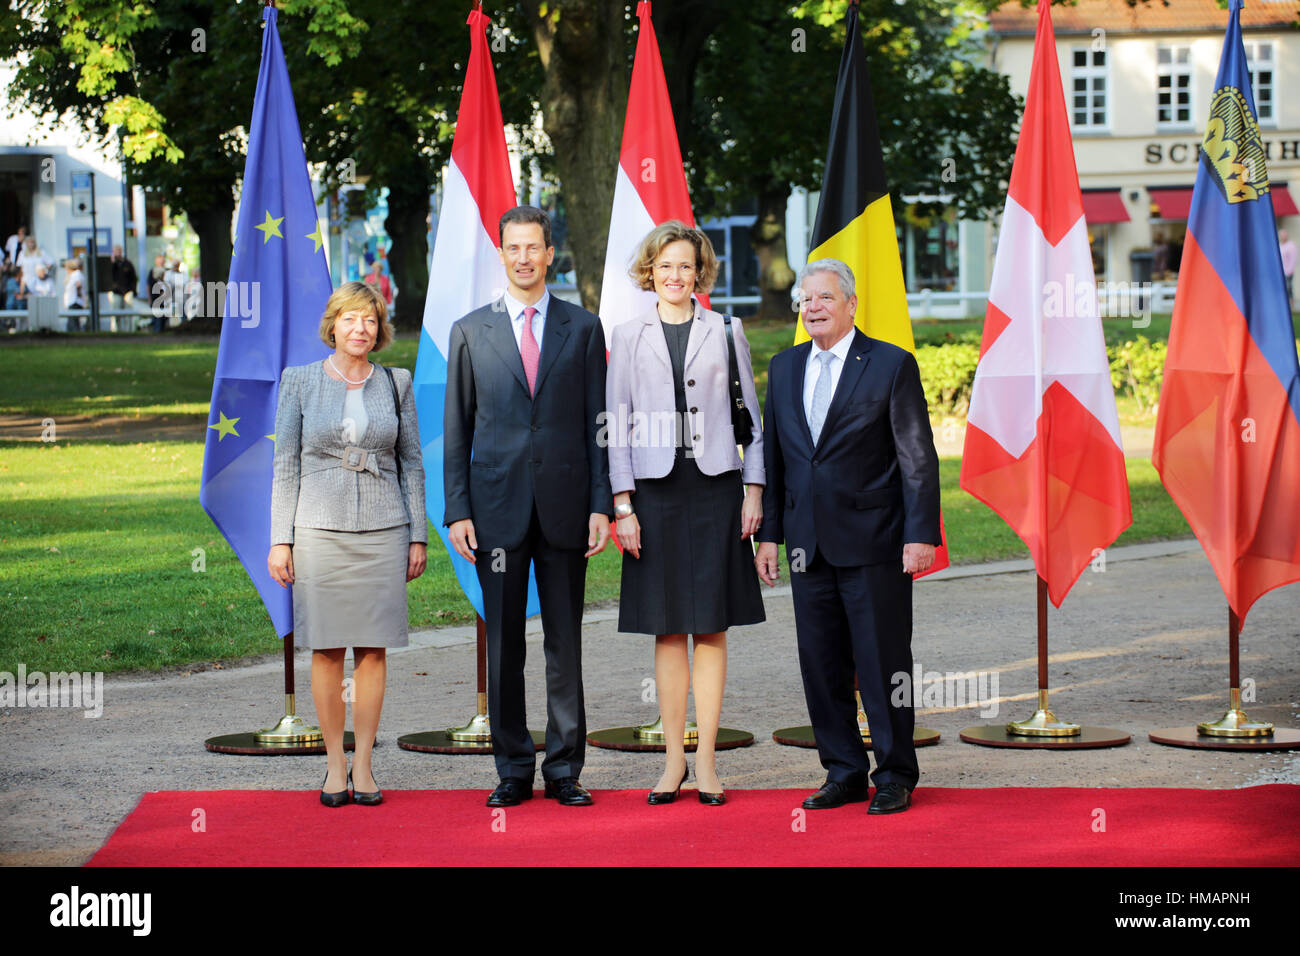 Le Prince Régent de Liechtenstein Alois rencontre le président Gauck sur Septembre 18, 2014 à Bad Doberan, Allemagne. Banque D'Images